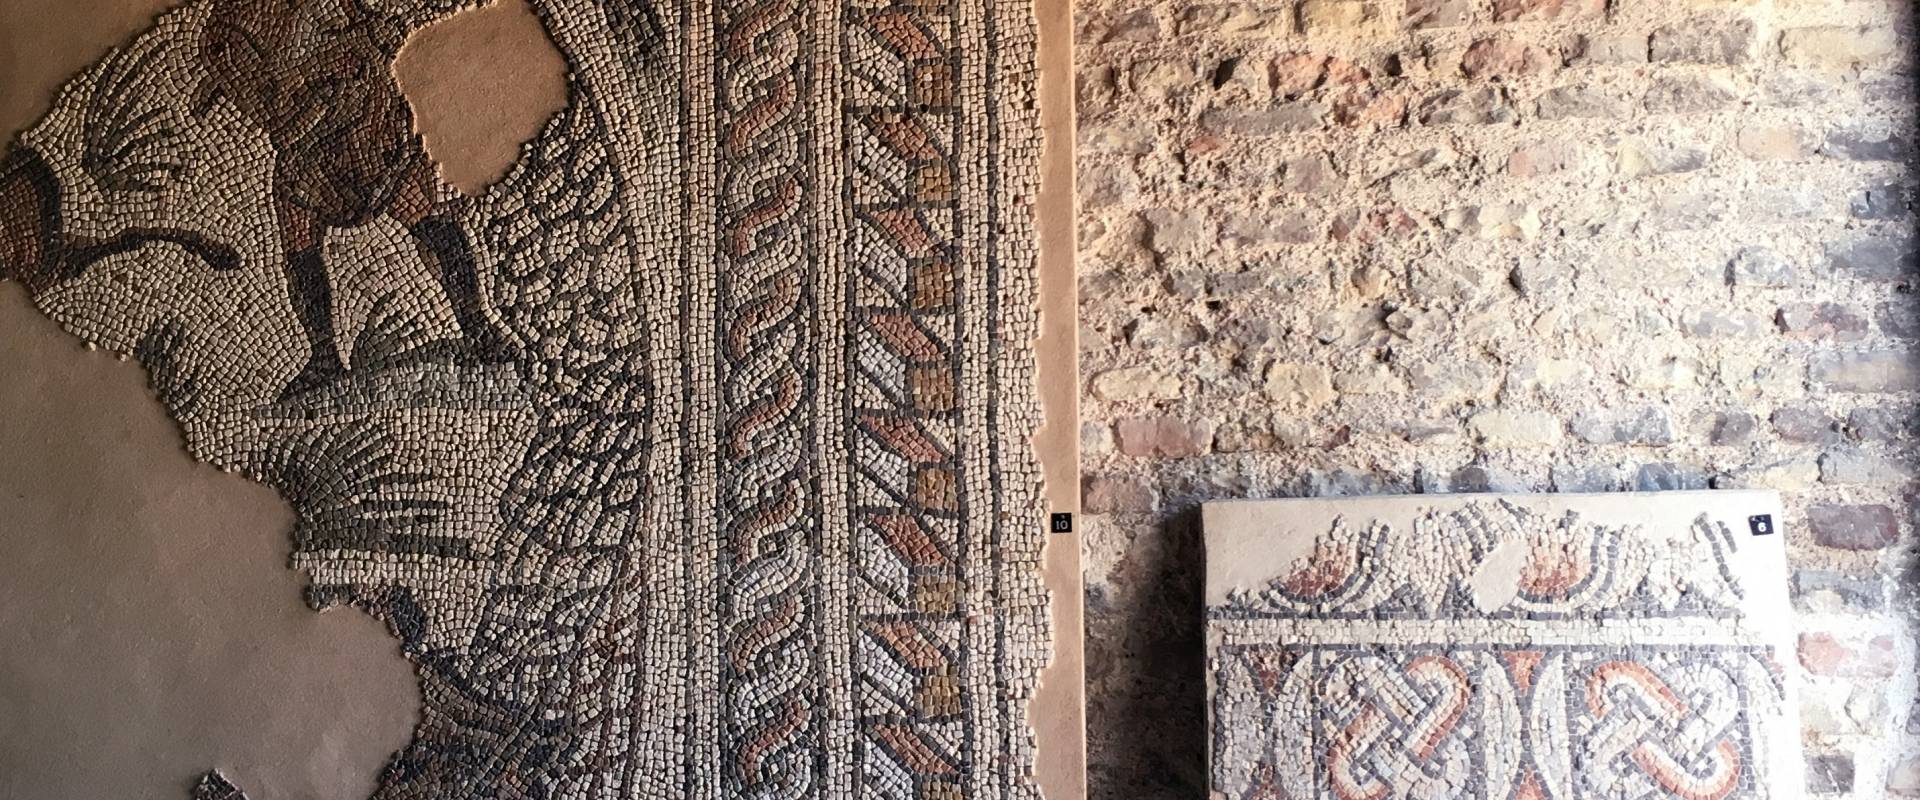 Palazzo di Teodorico - Mosaico piano superiore 3 foto di Walter manni